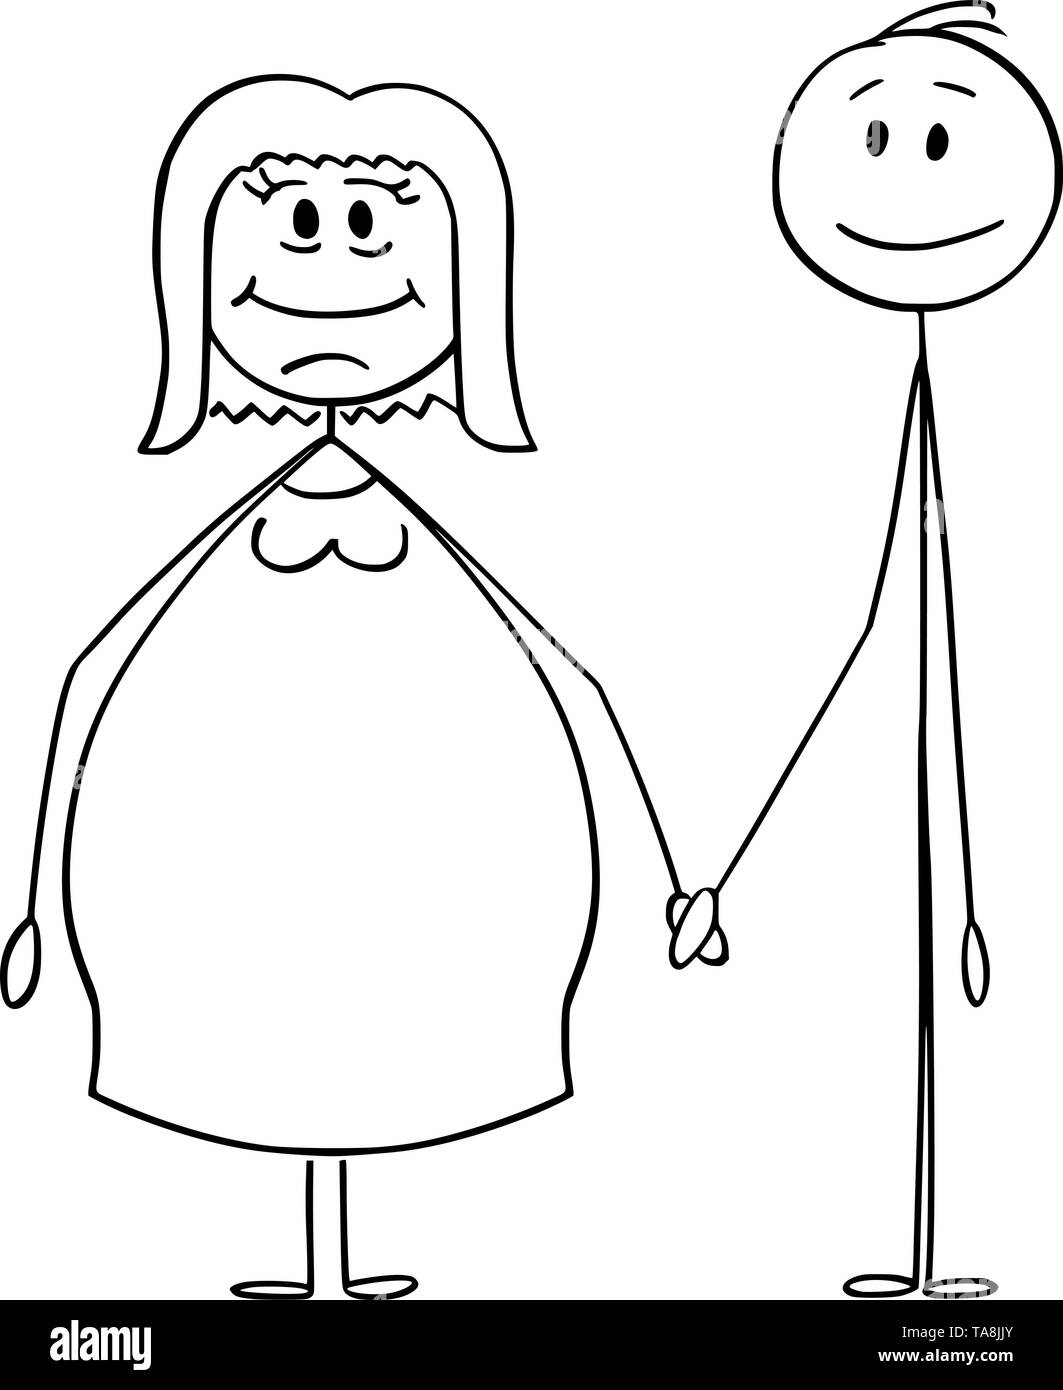 Vektor cartoon Strichmännchen Zeichnen konzeptionelle Darstellung der heterosexuellen Paar übergewichtige oder fettleibige Frau und Slim Man halten sich an den Händen. Stock Vektor